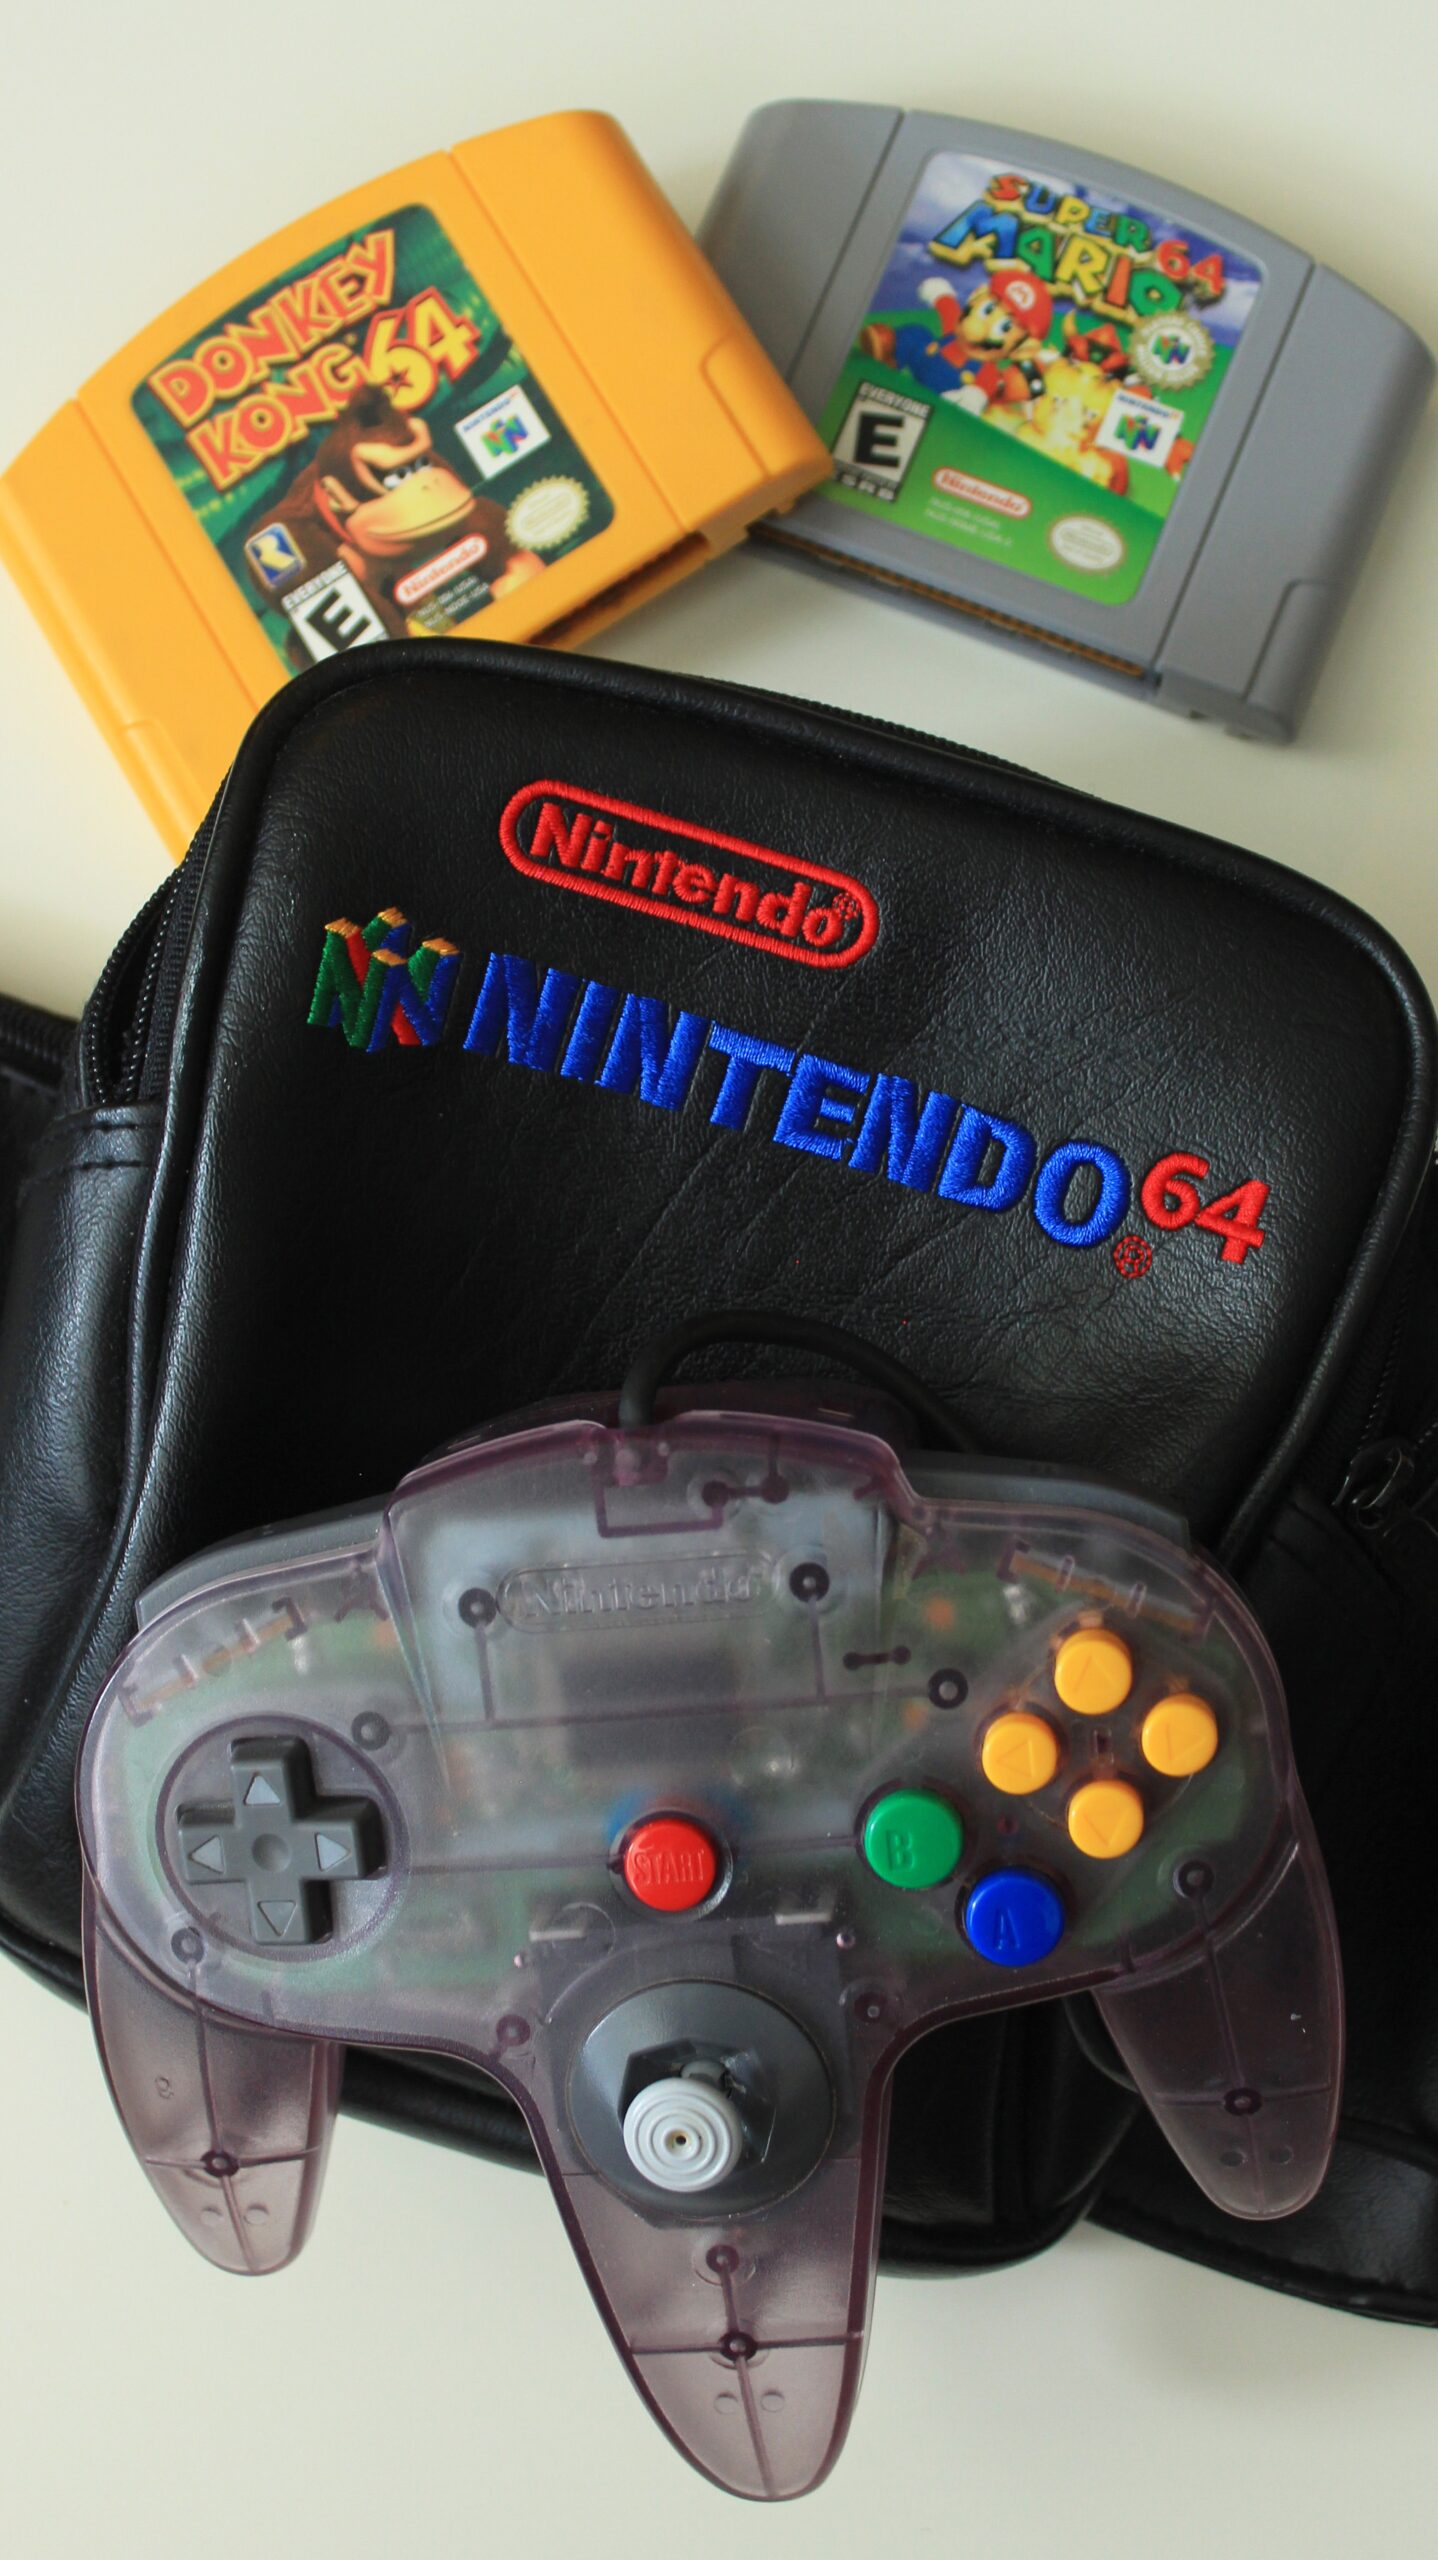 Nintendo 64 controller and games